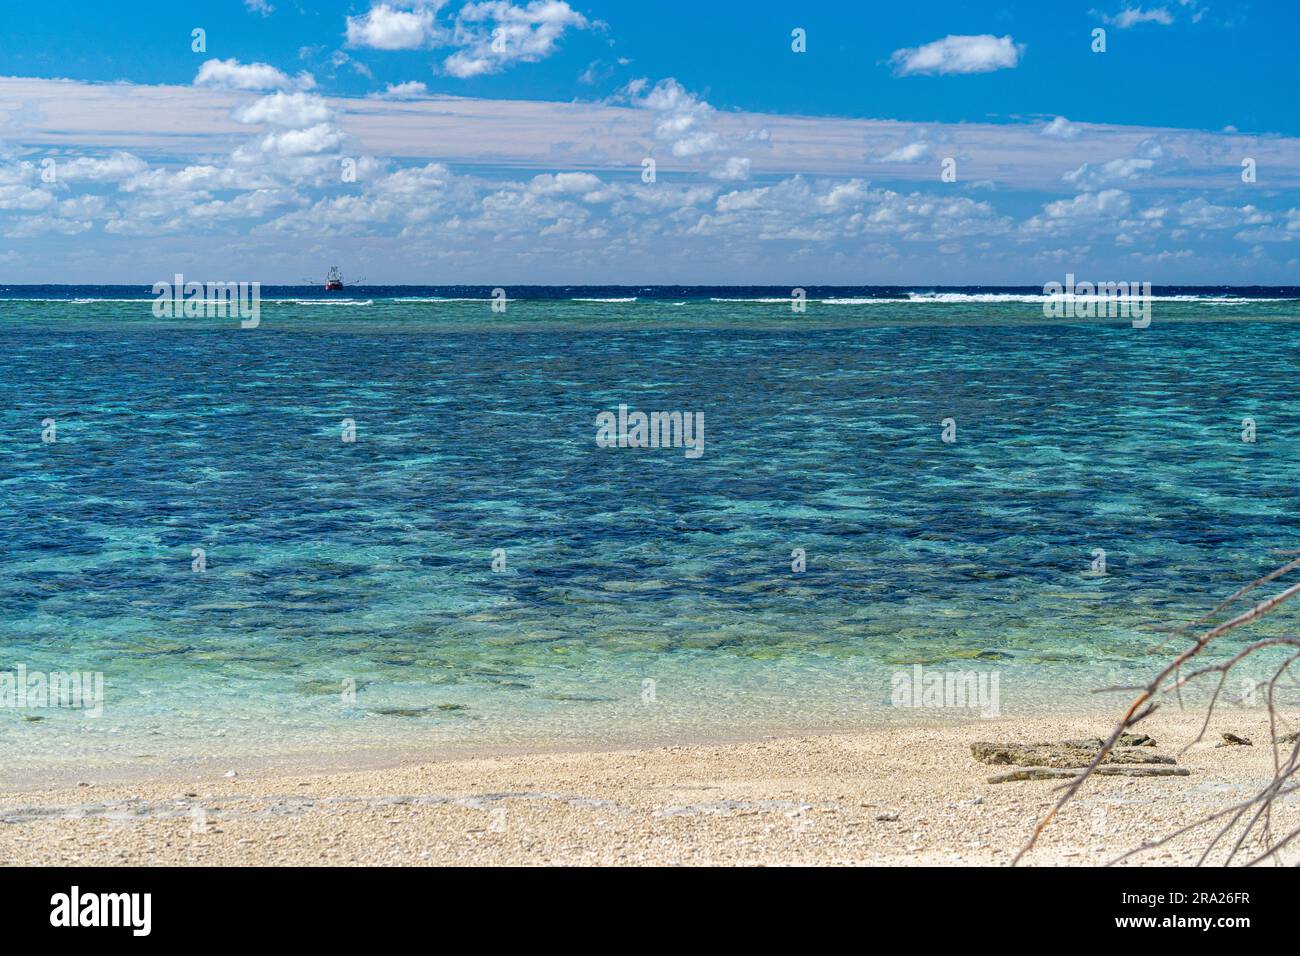 Chalutier de pêche ancré à l'extérieur du lagon de corail entourant Lady Elliot Island, Grande Barrière de corail, Queensland, Australie Banque D'Images